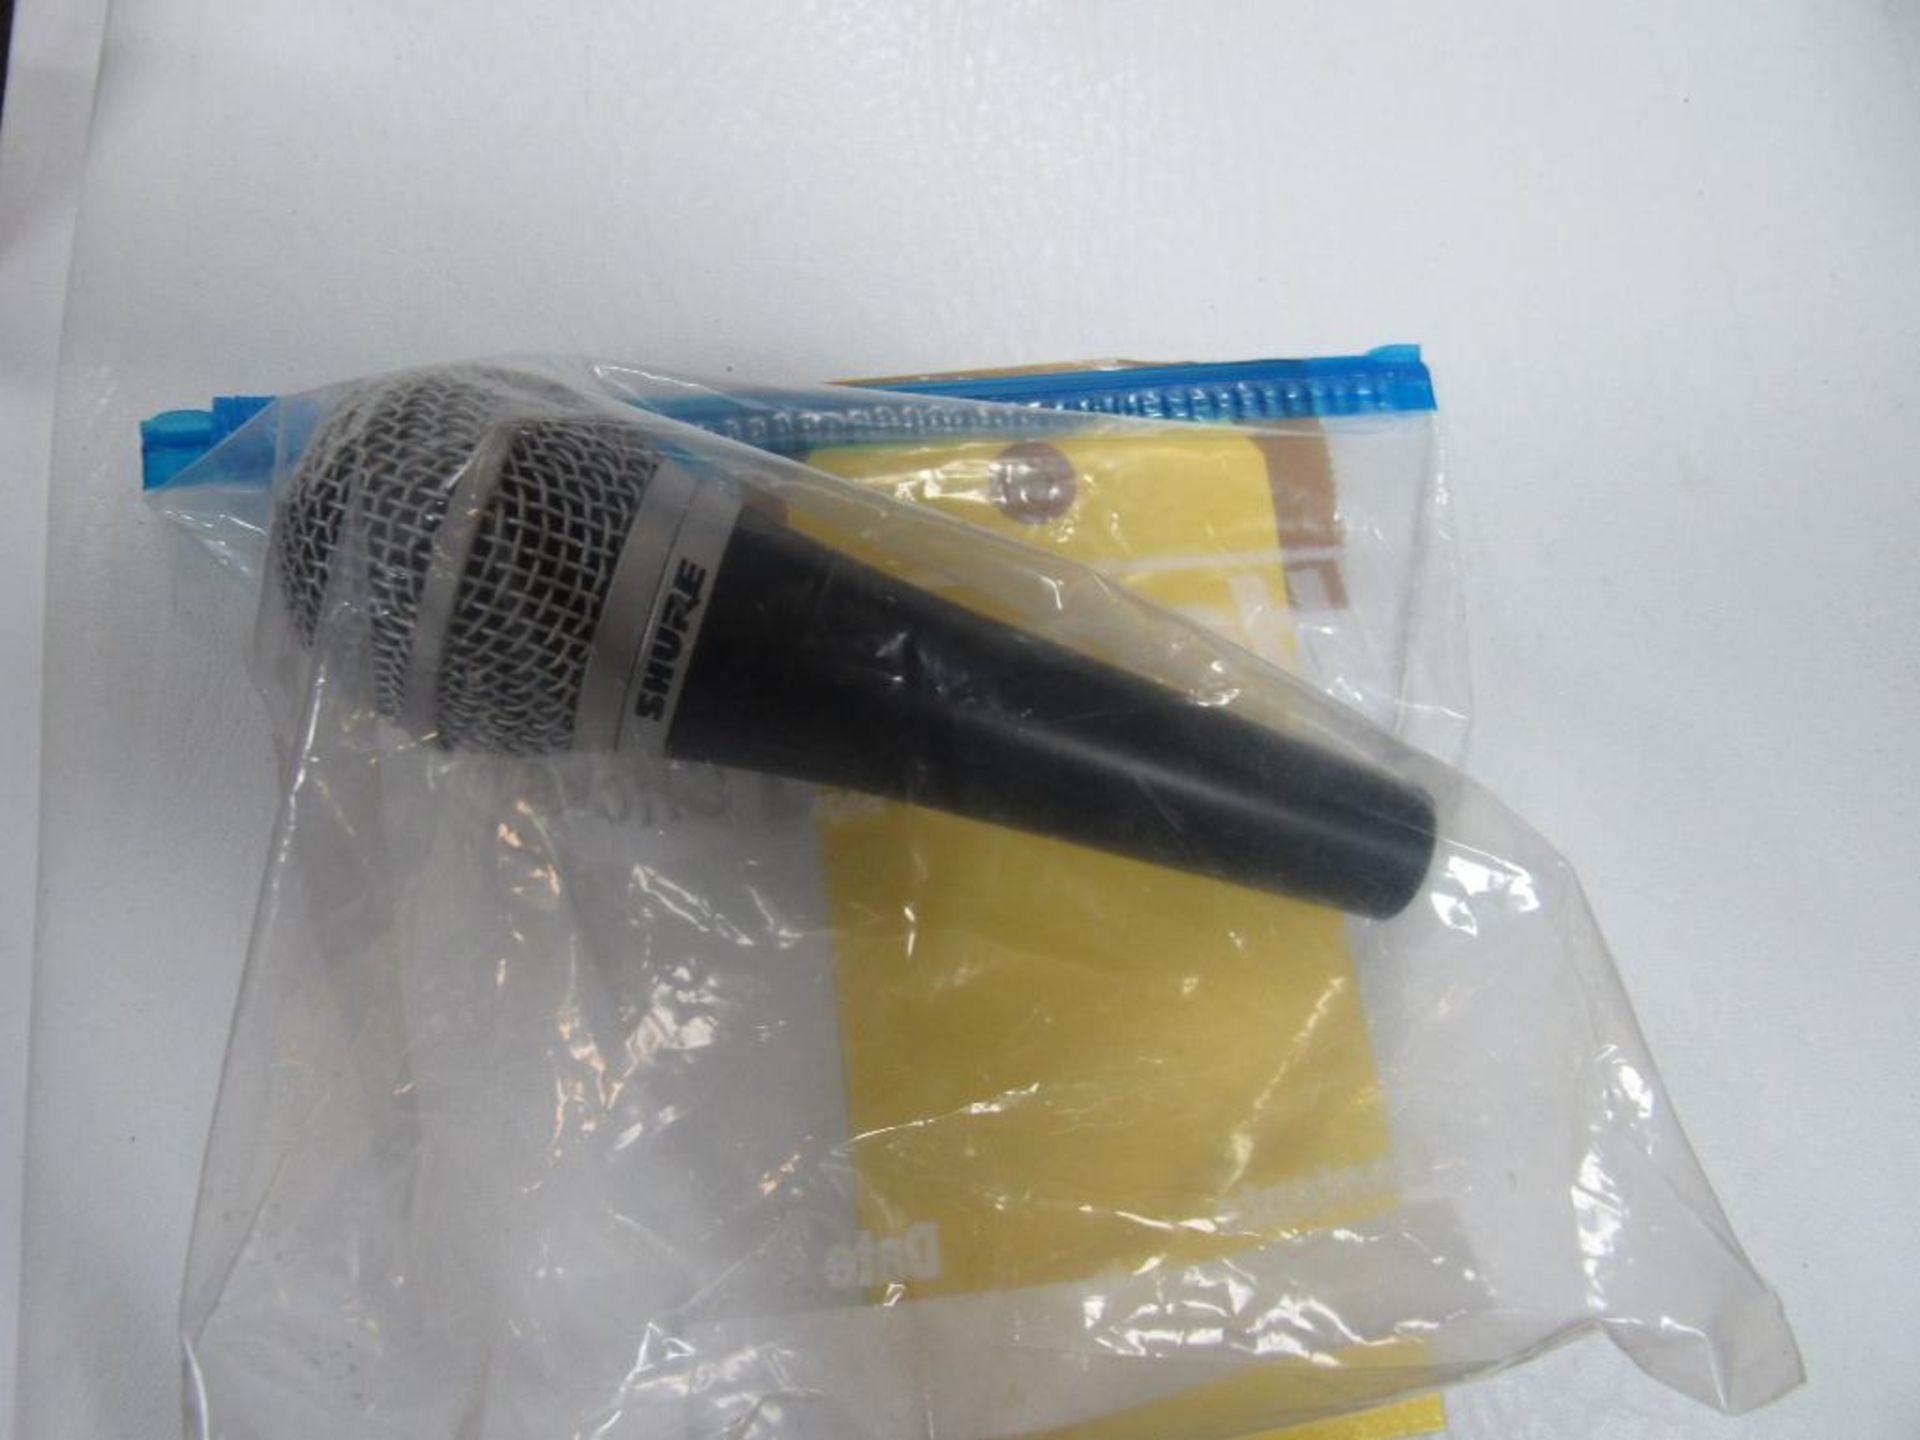 Microphone-Handheld-Shure, PG48